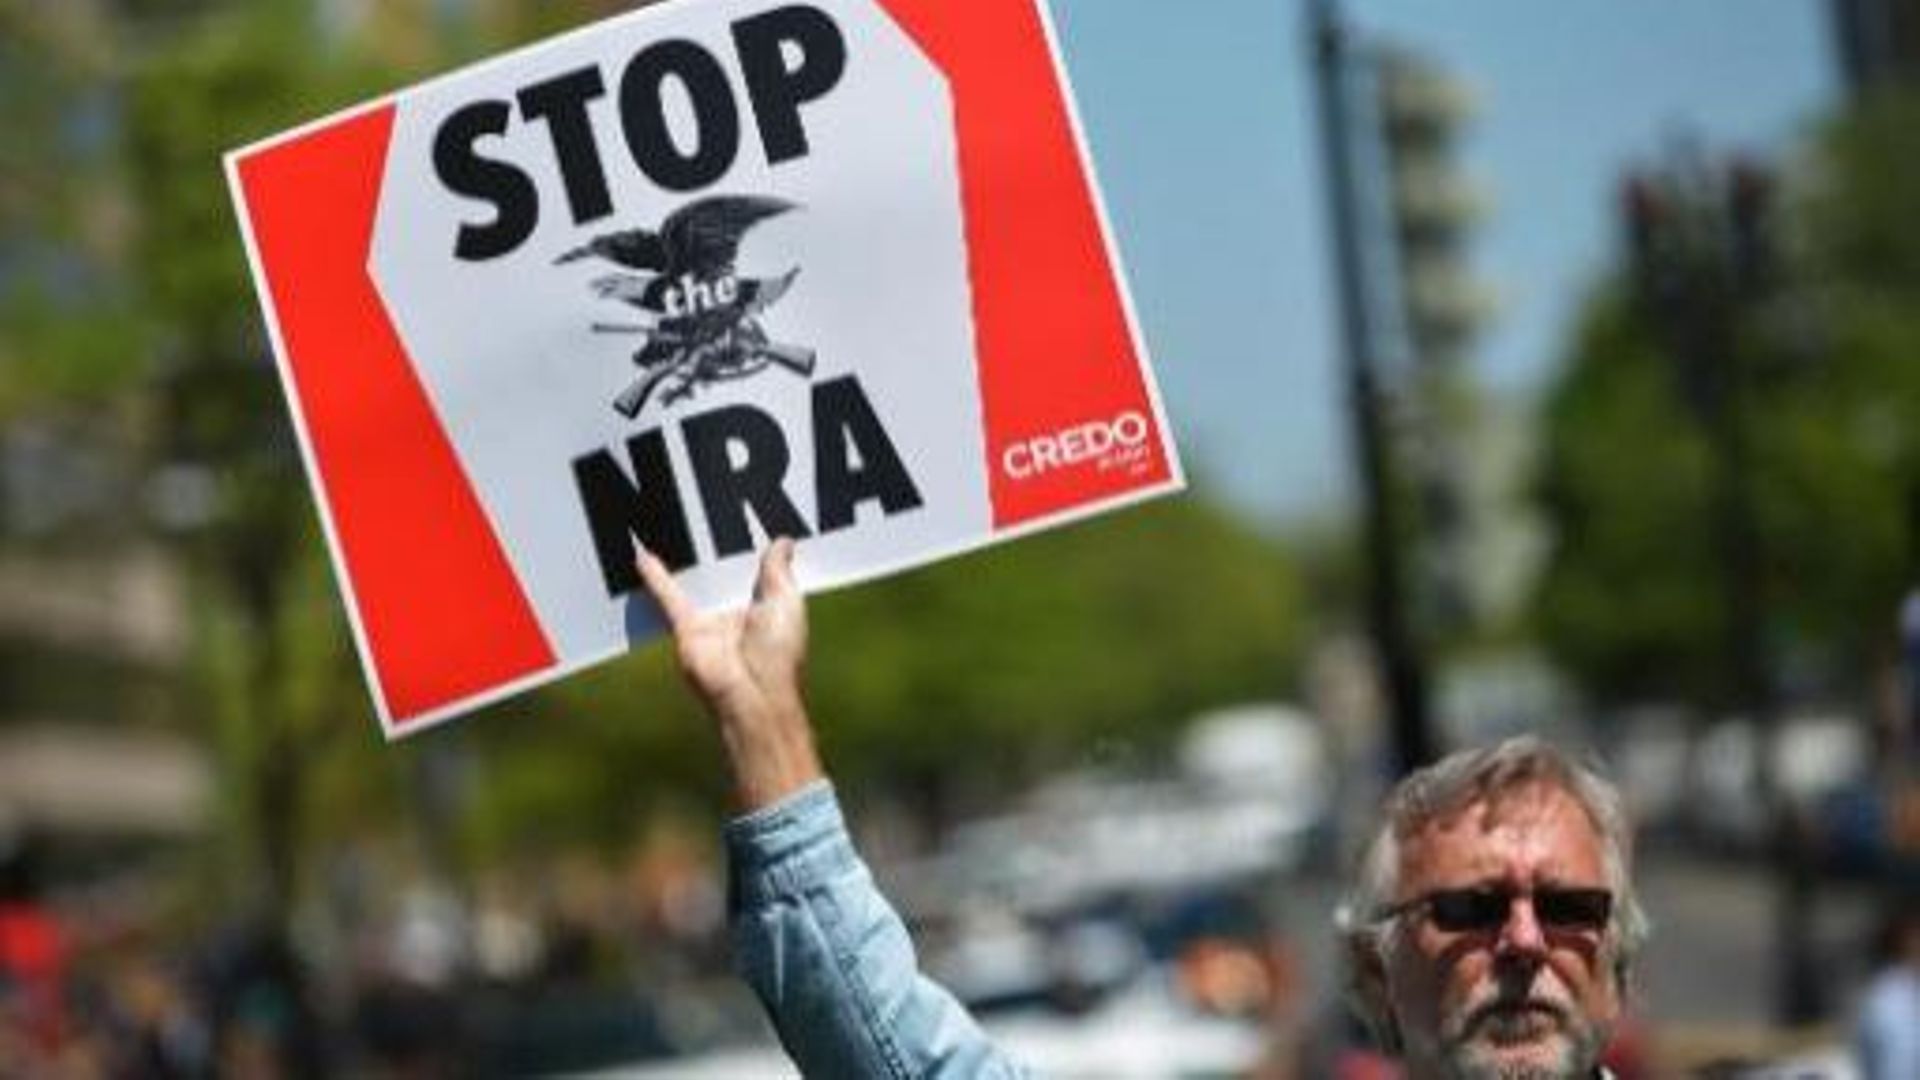 Le lobby des armes, la NRA:  souvent brocardé, jamais battu